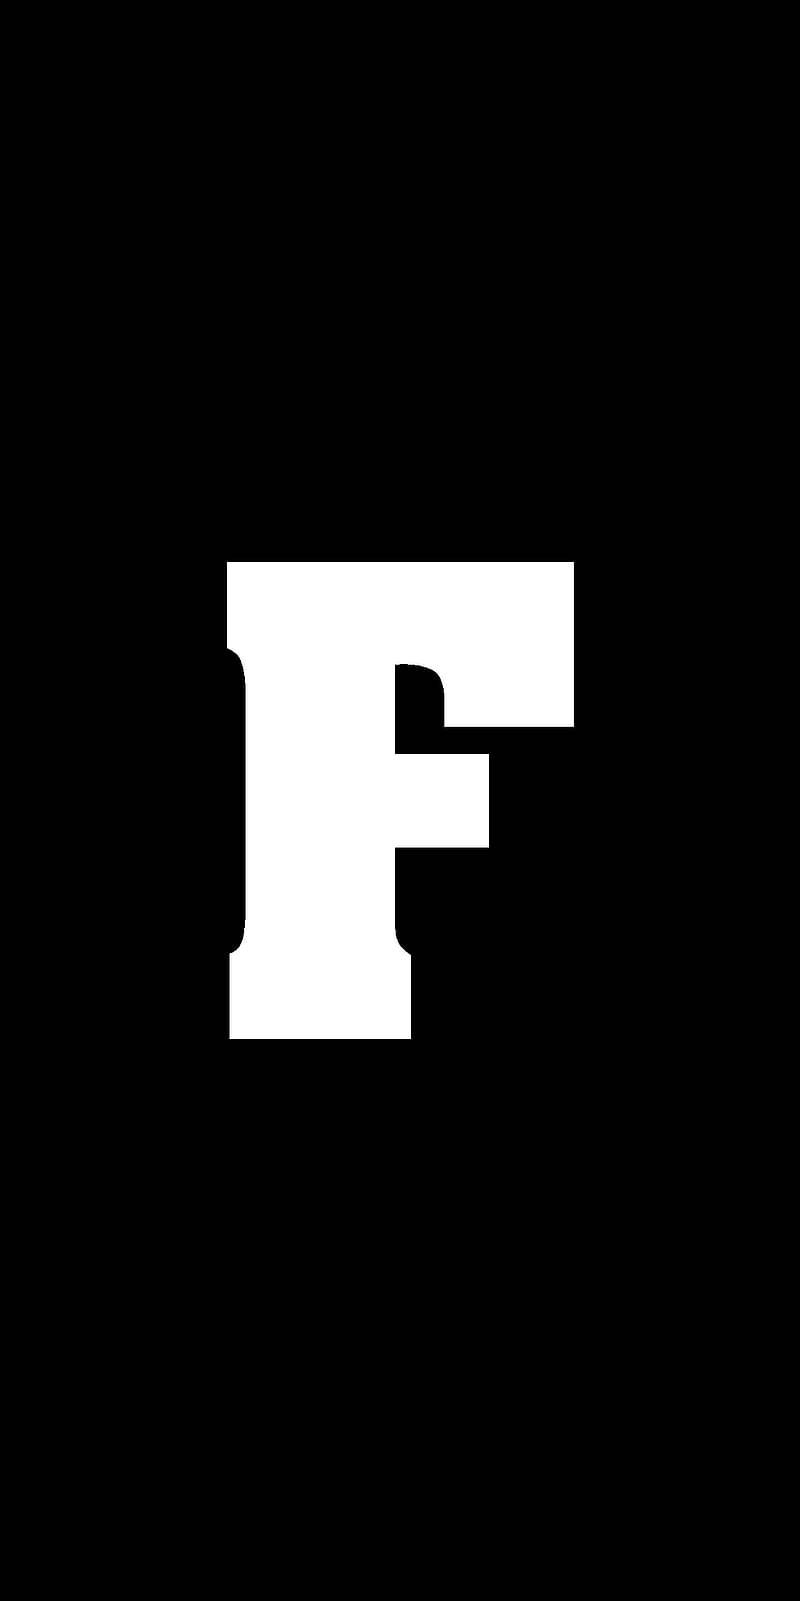 Monochrome Letter F Design Background